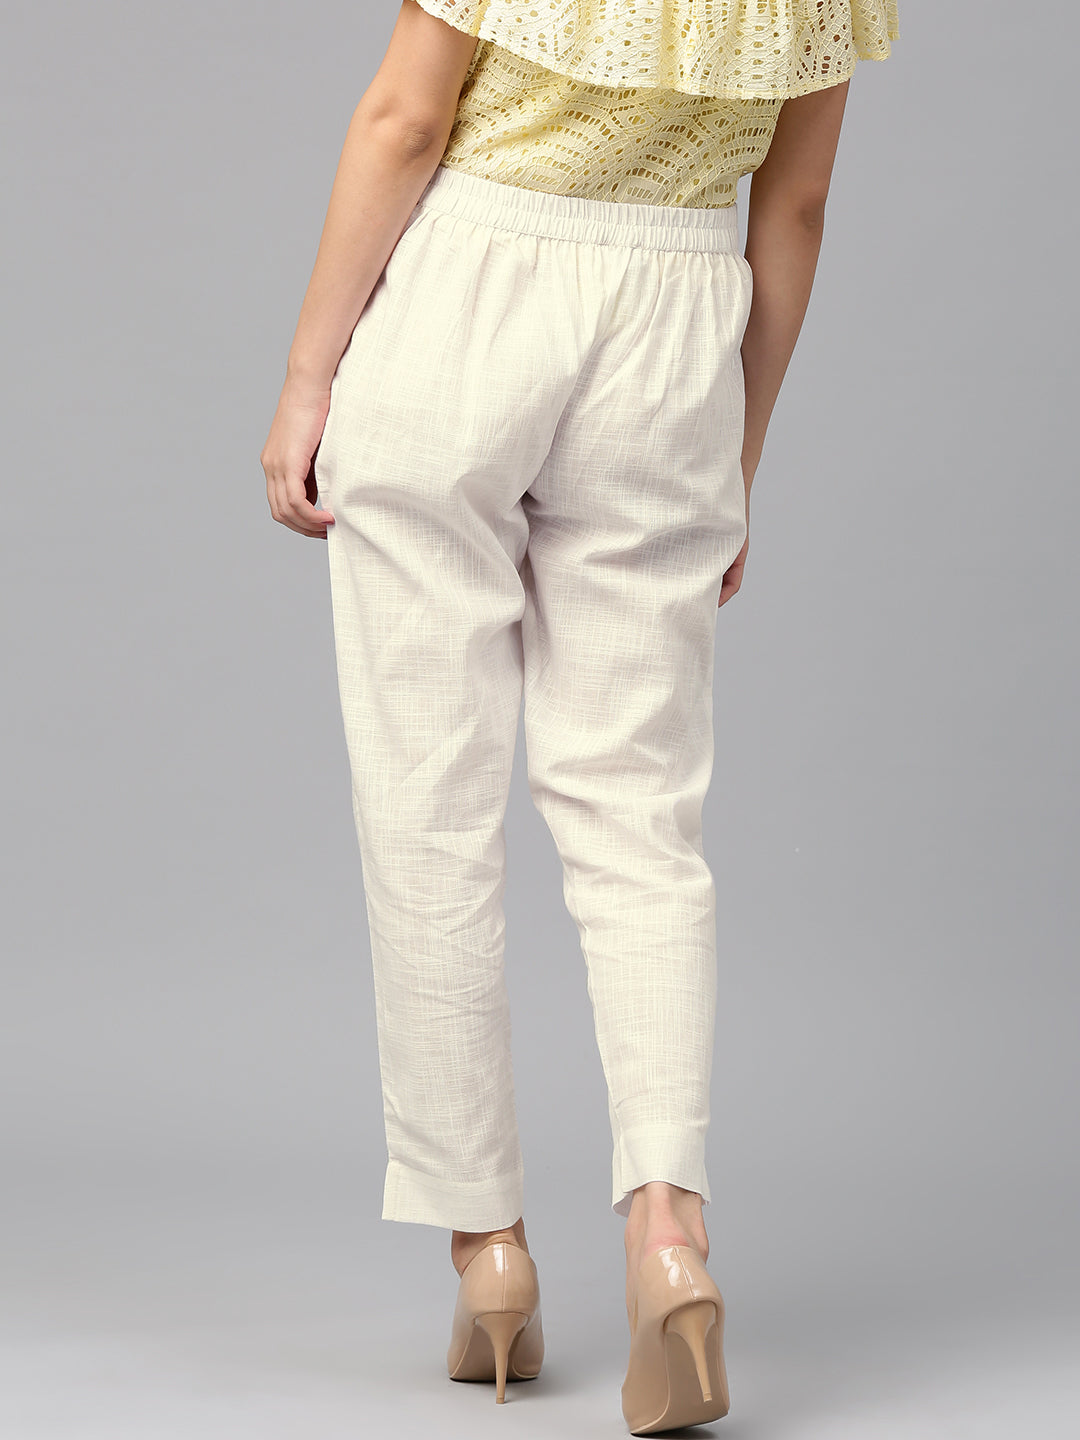 White Pants For Women - Buy White Pants For Women online at Best